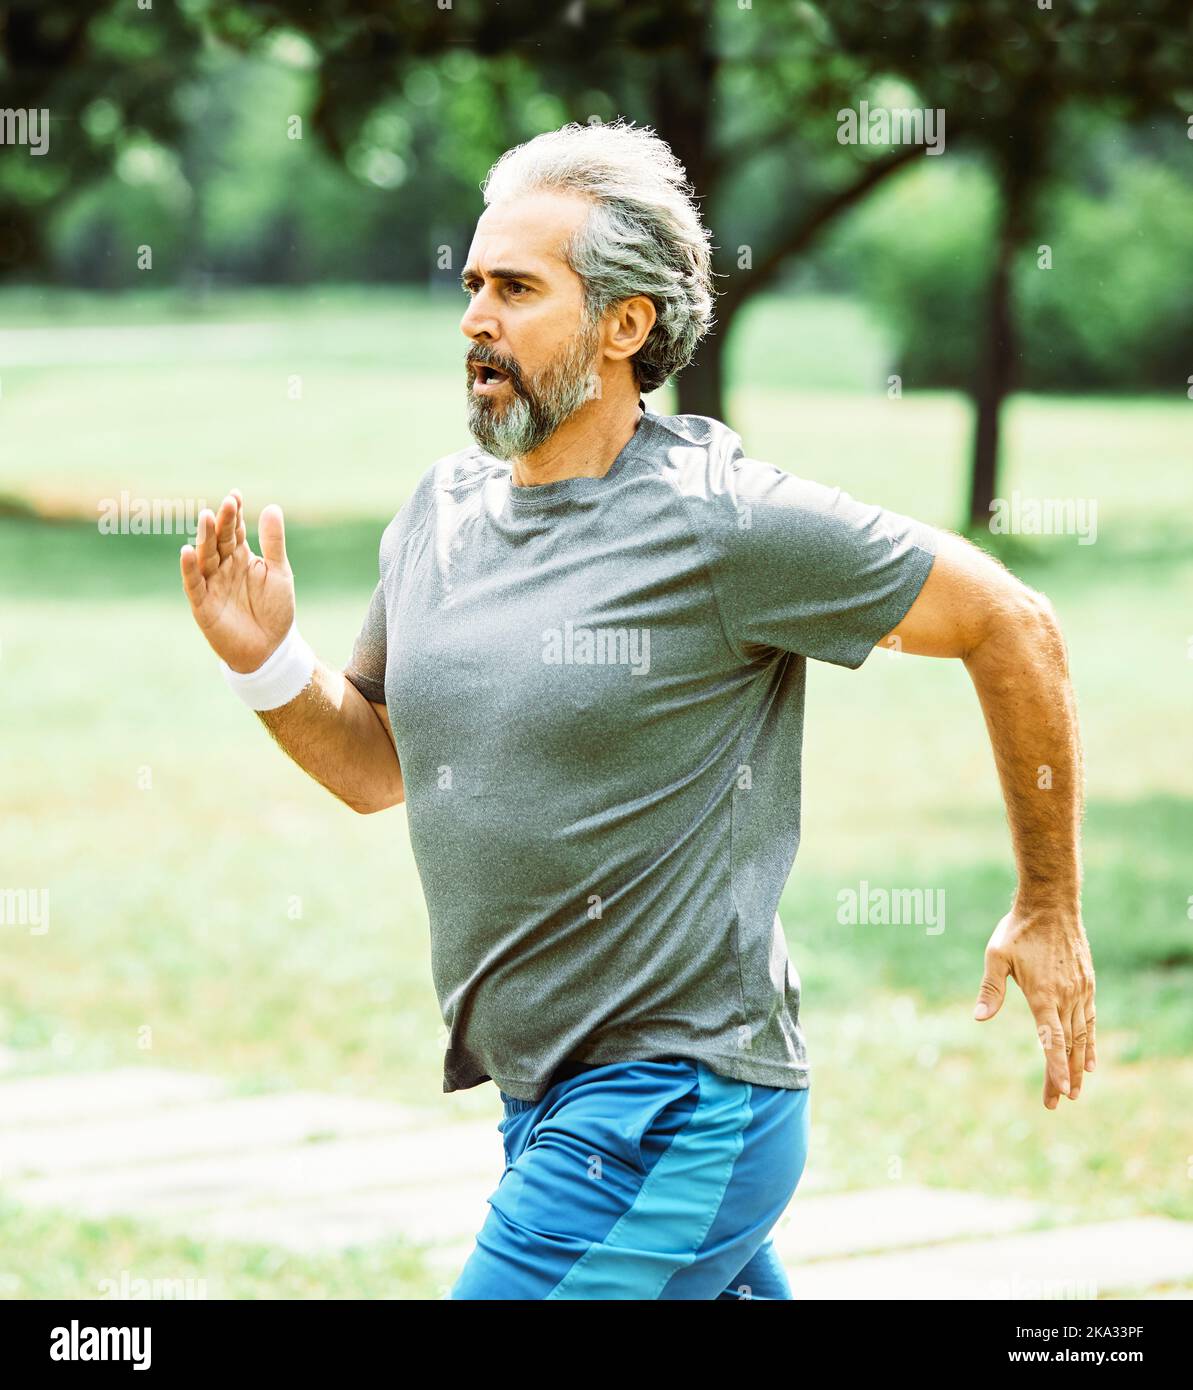 senior fitness homme sport actif exercice course jogging santé coureur taille jogger entraînement athlète entraînement vitesse marathon personnes âgées gary cheveux Banque D'Images